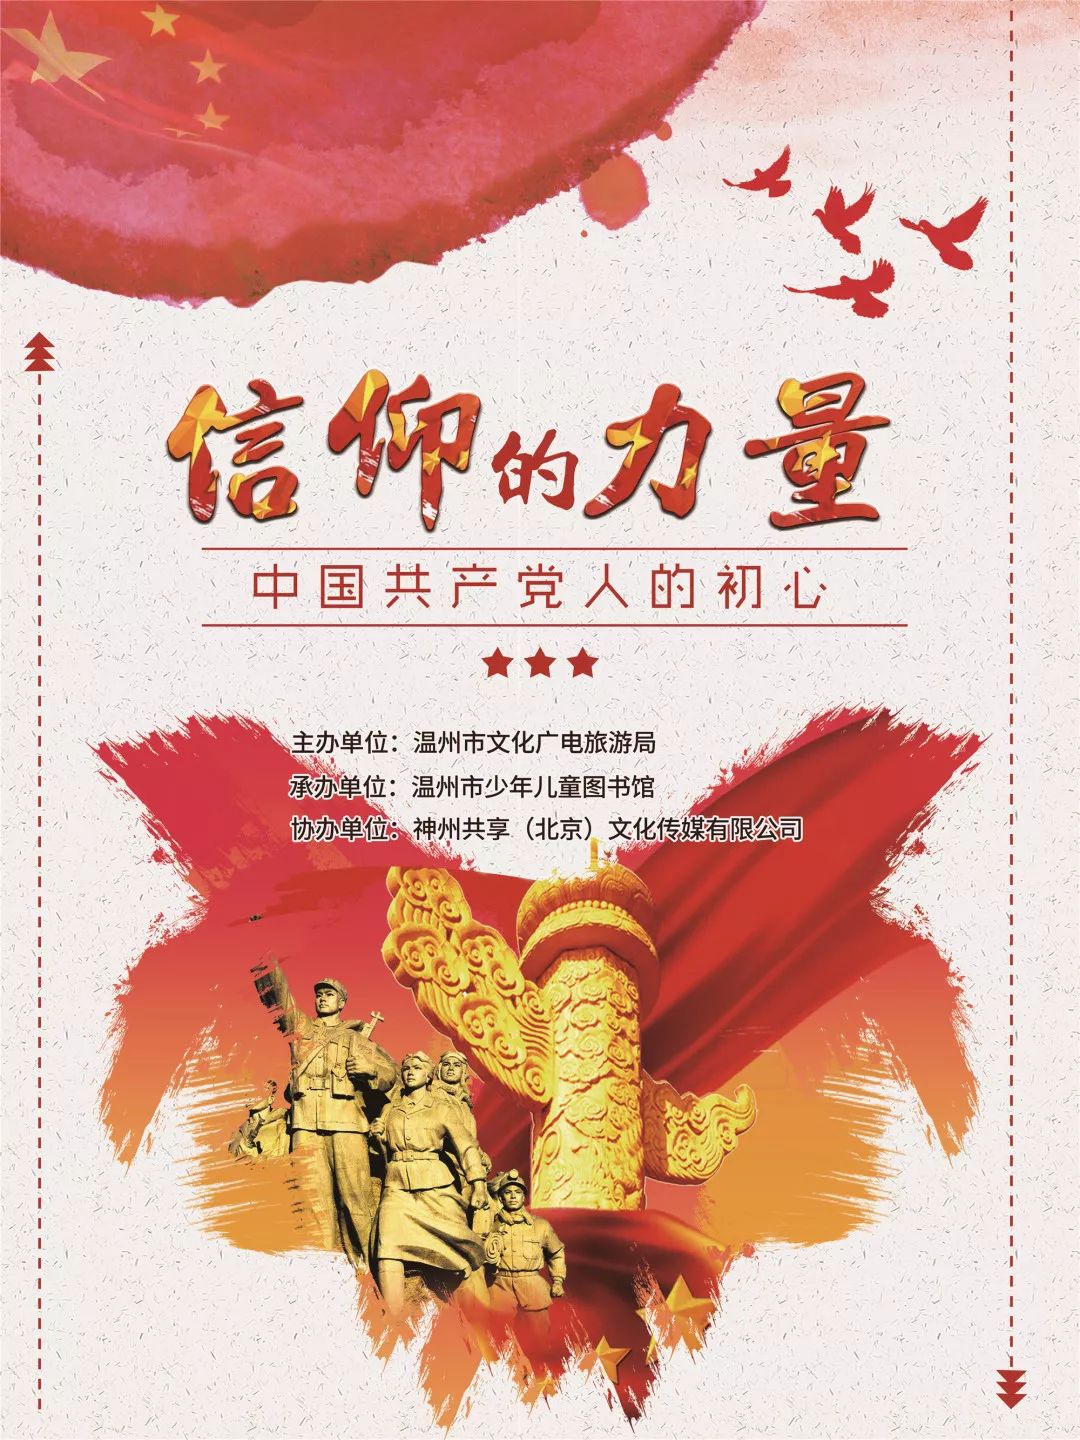 线上展览丨信仰的力量——中国共产党人的初心